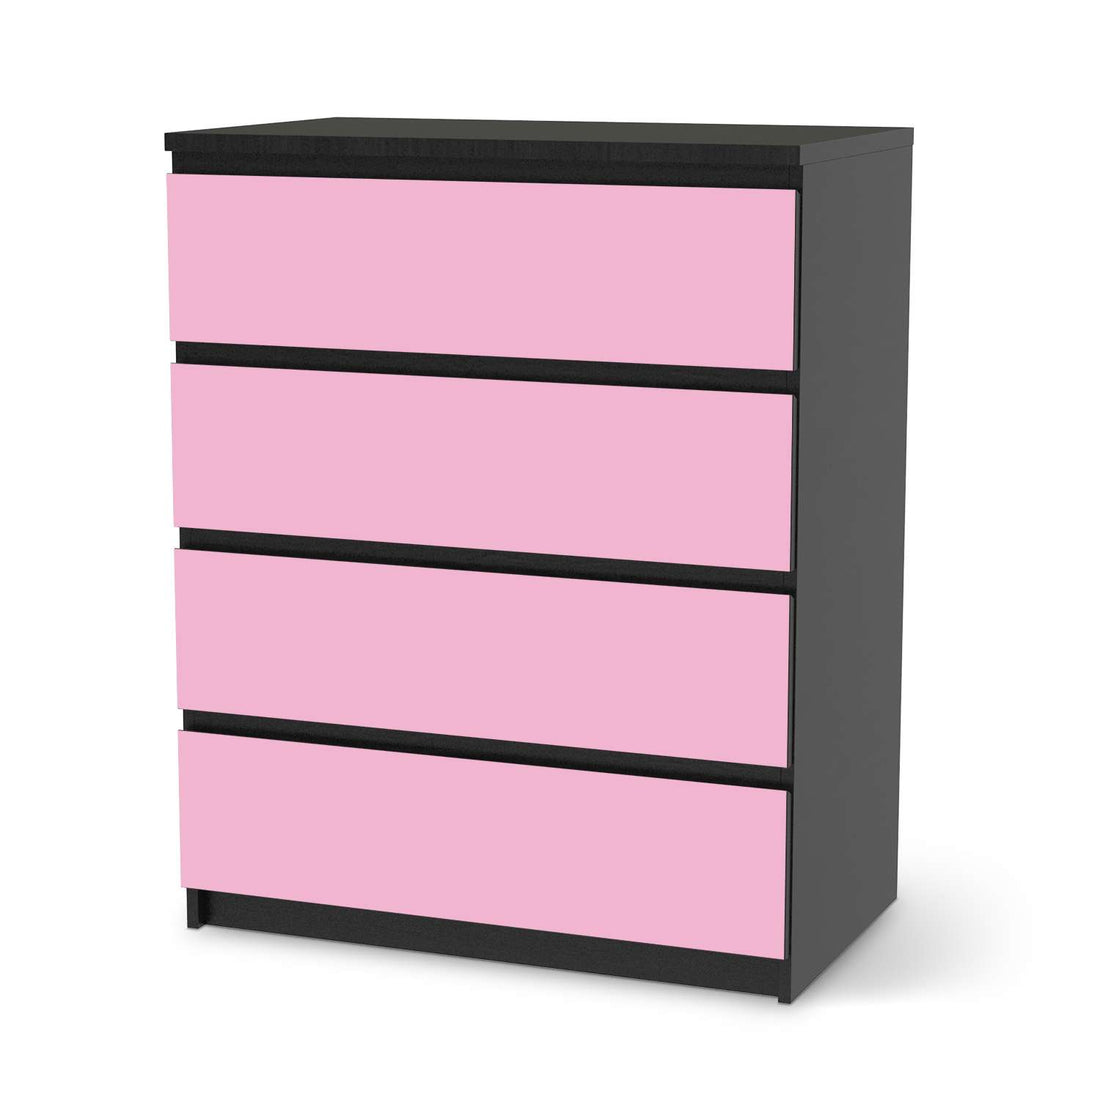 Folie für Möbel Pink Light - IKEA Malm Kommode 4 Schubladen - schwarz